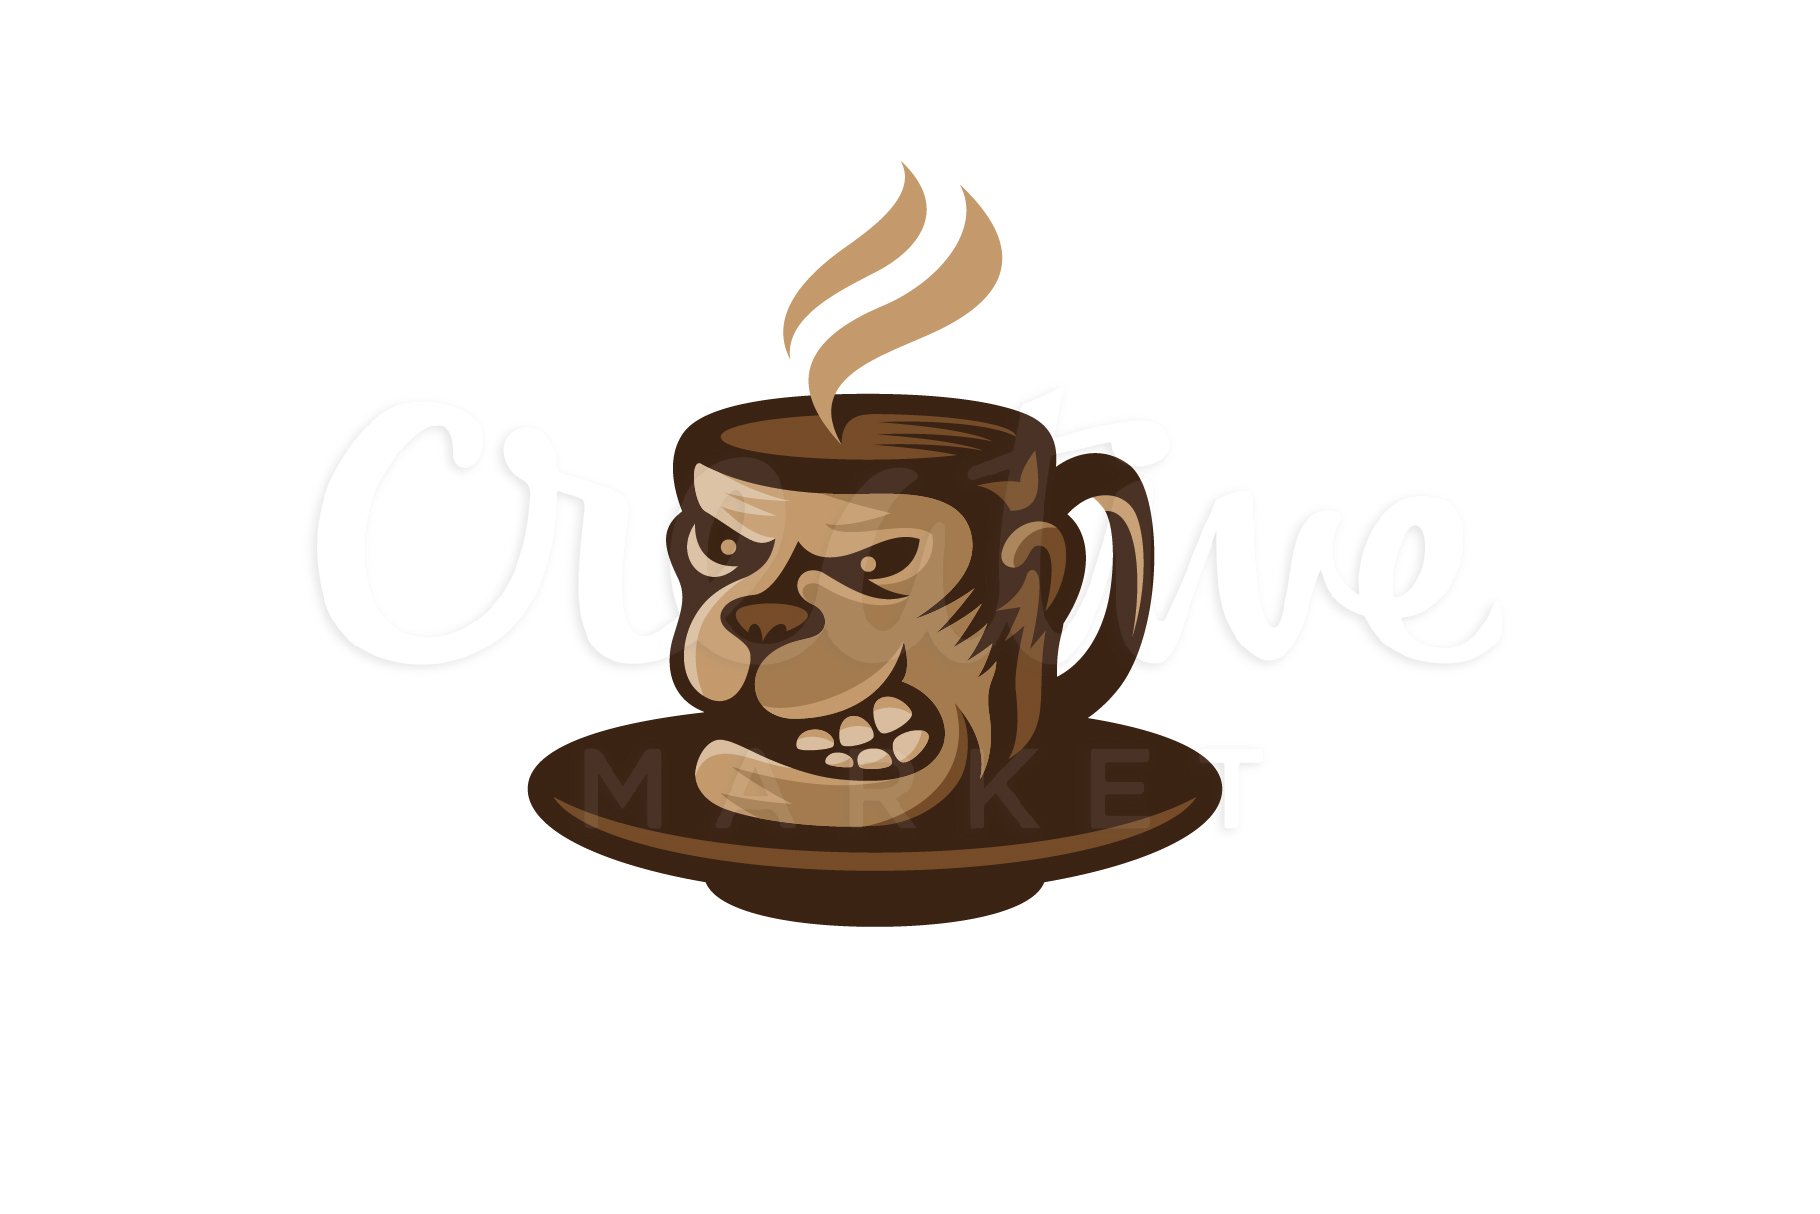 Gorilla Coffee Logo cover image.